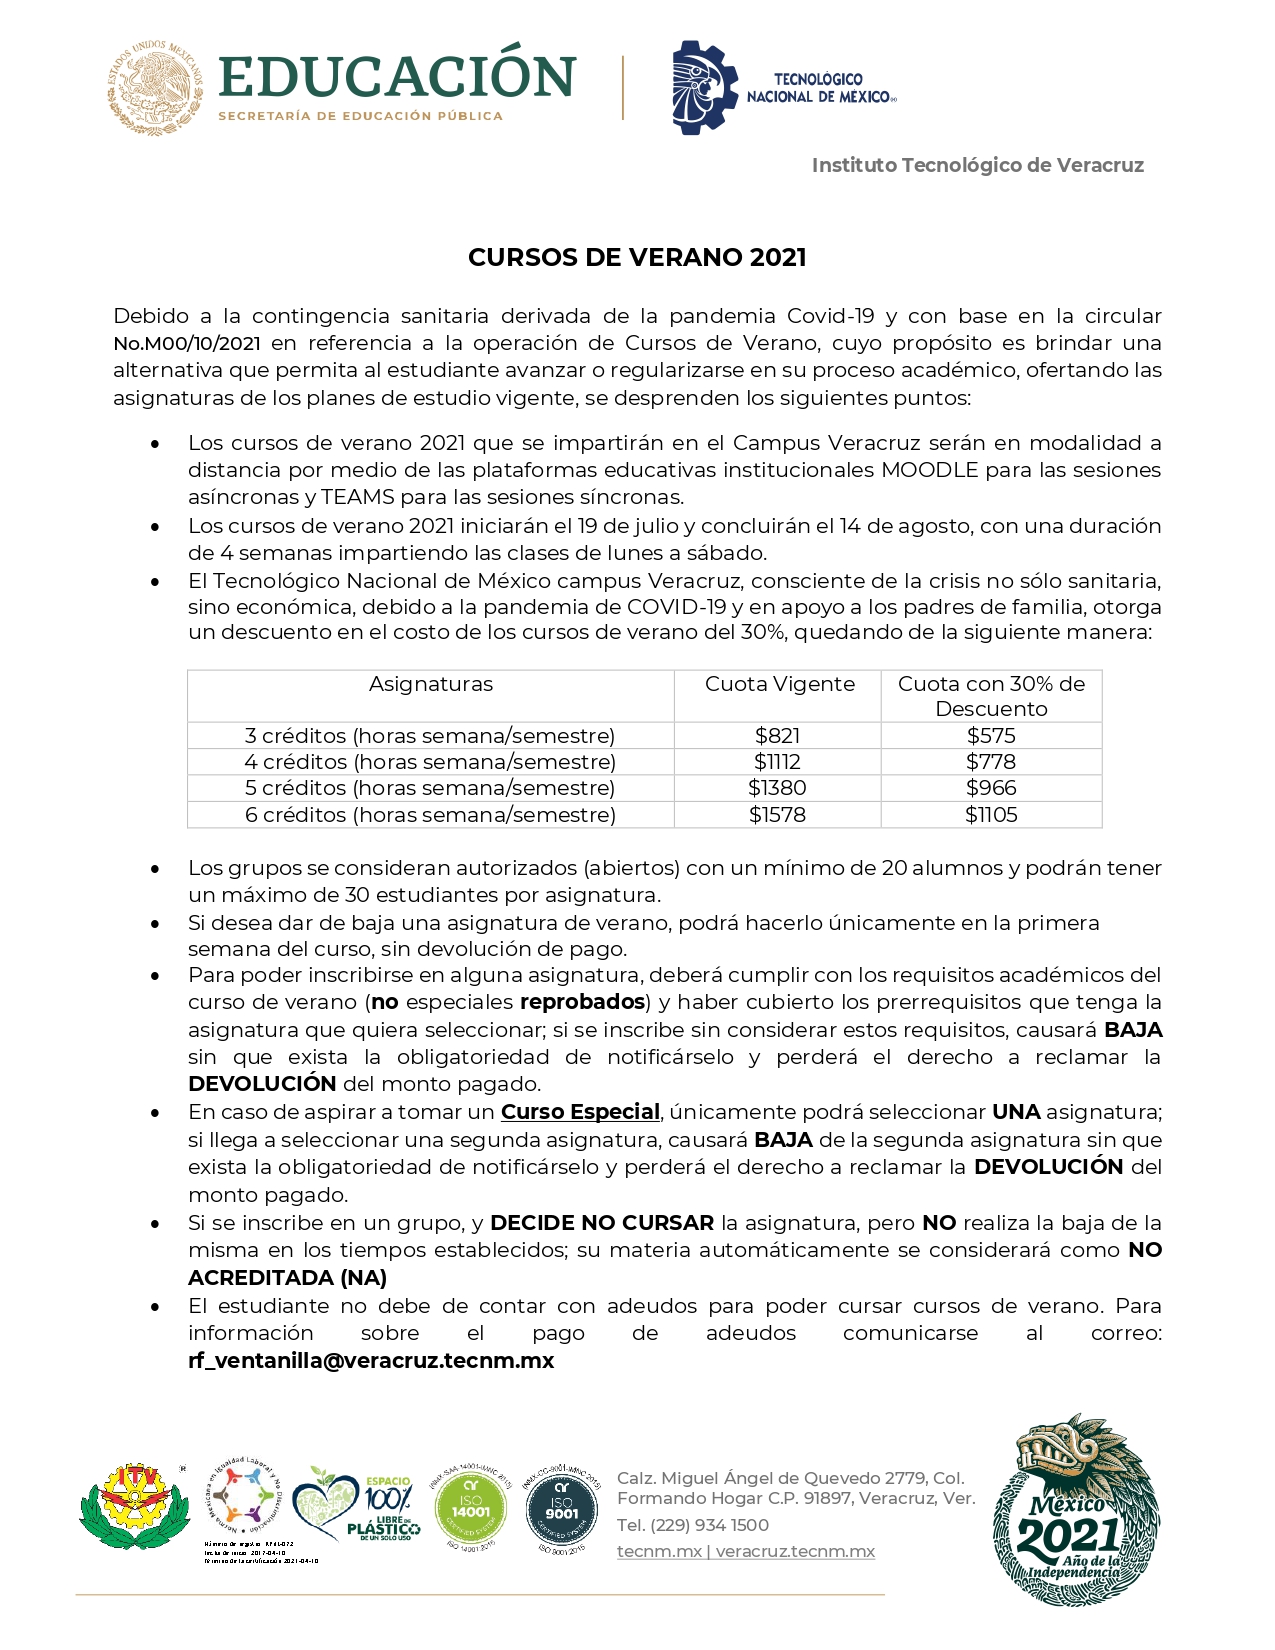 CONVOCATORIA_VERANO_2021_page-0001.jpg